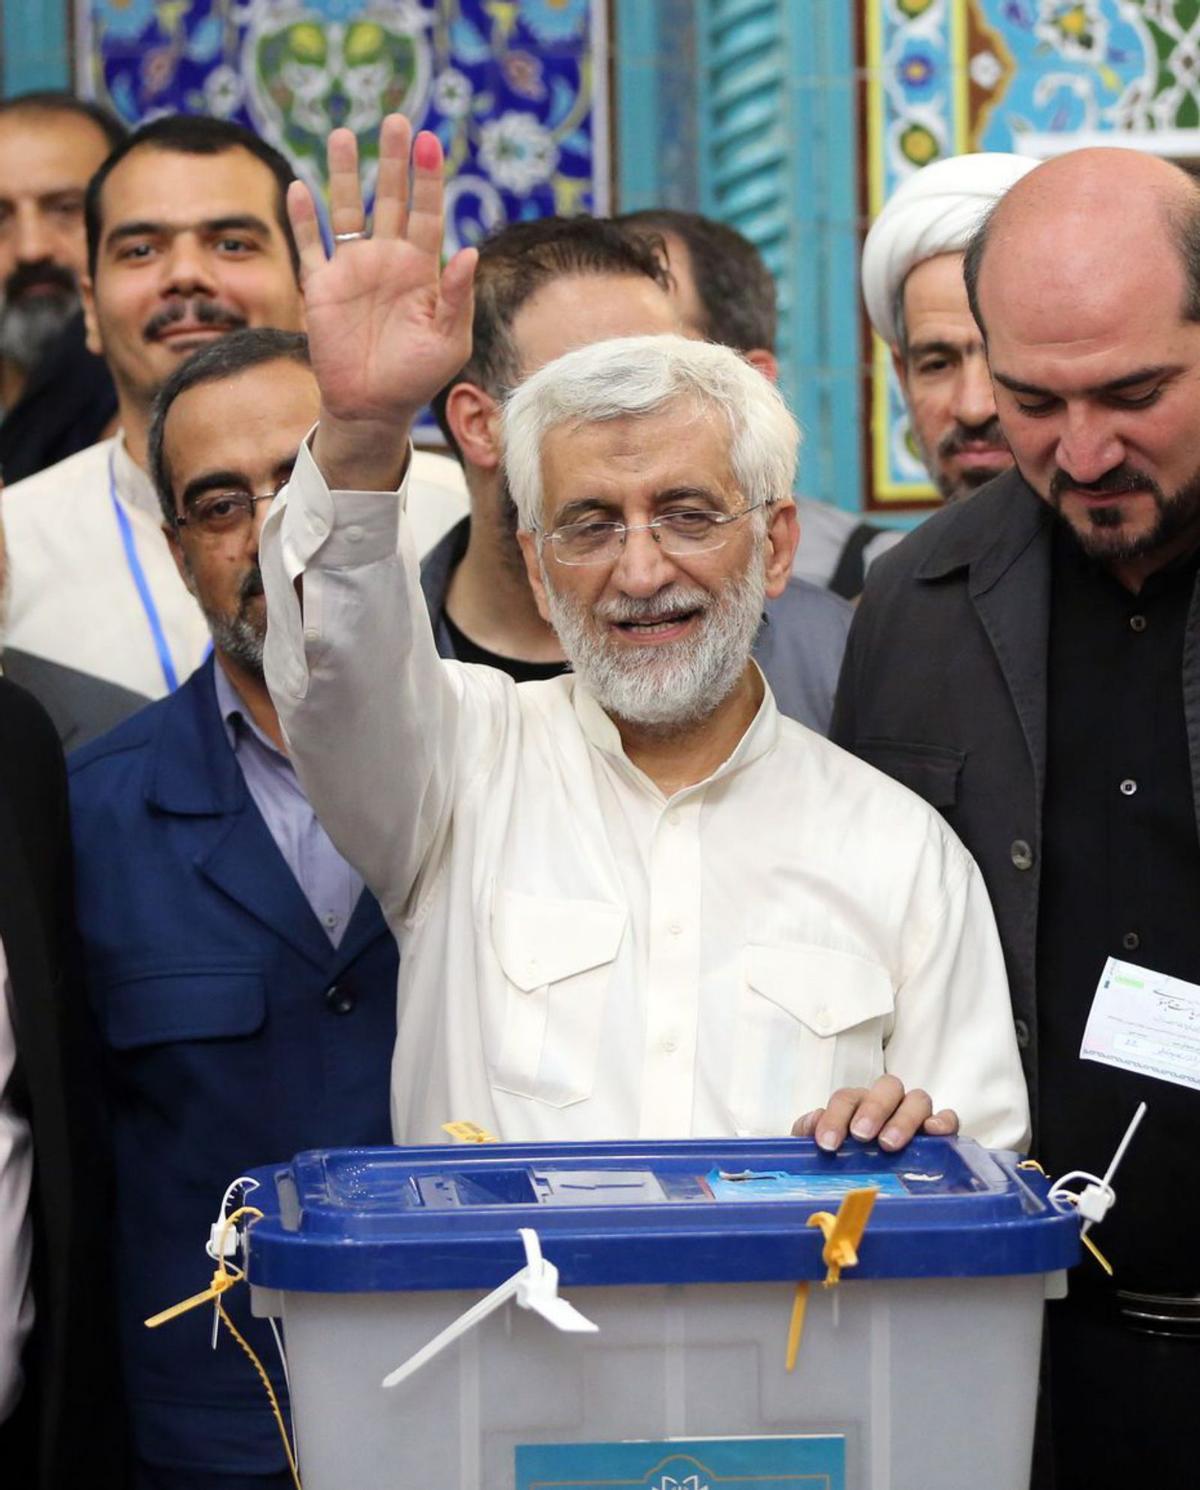 Un empat tècnic porta l’Iran a una segona volta de les presidencials